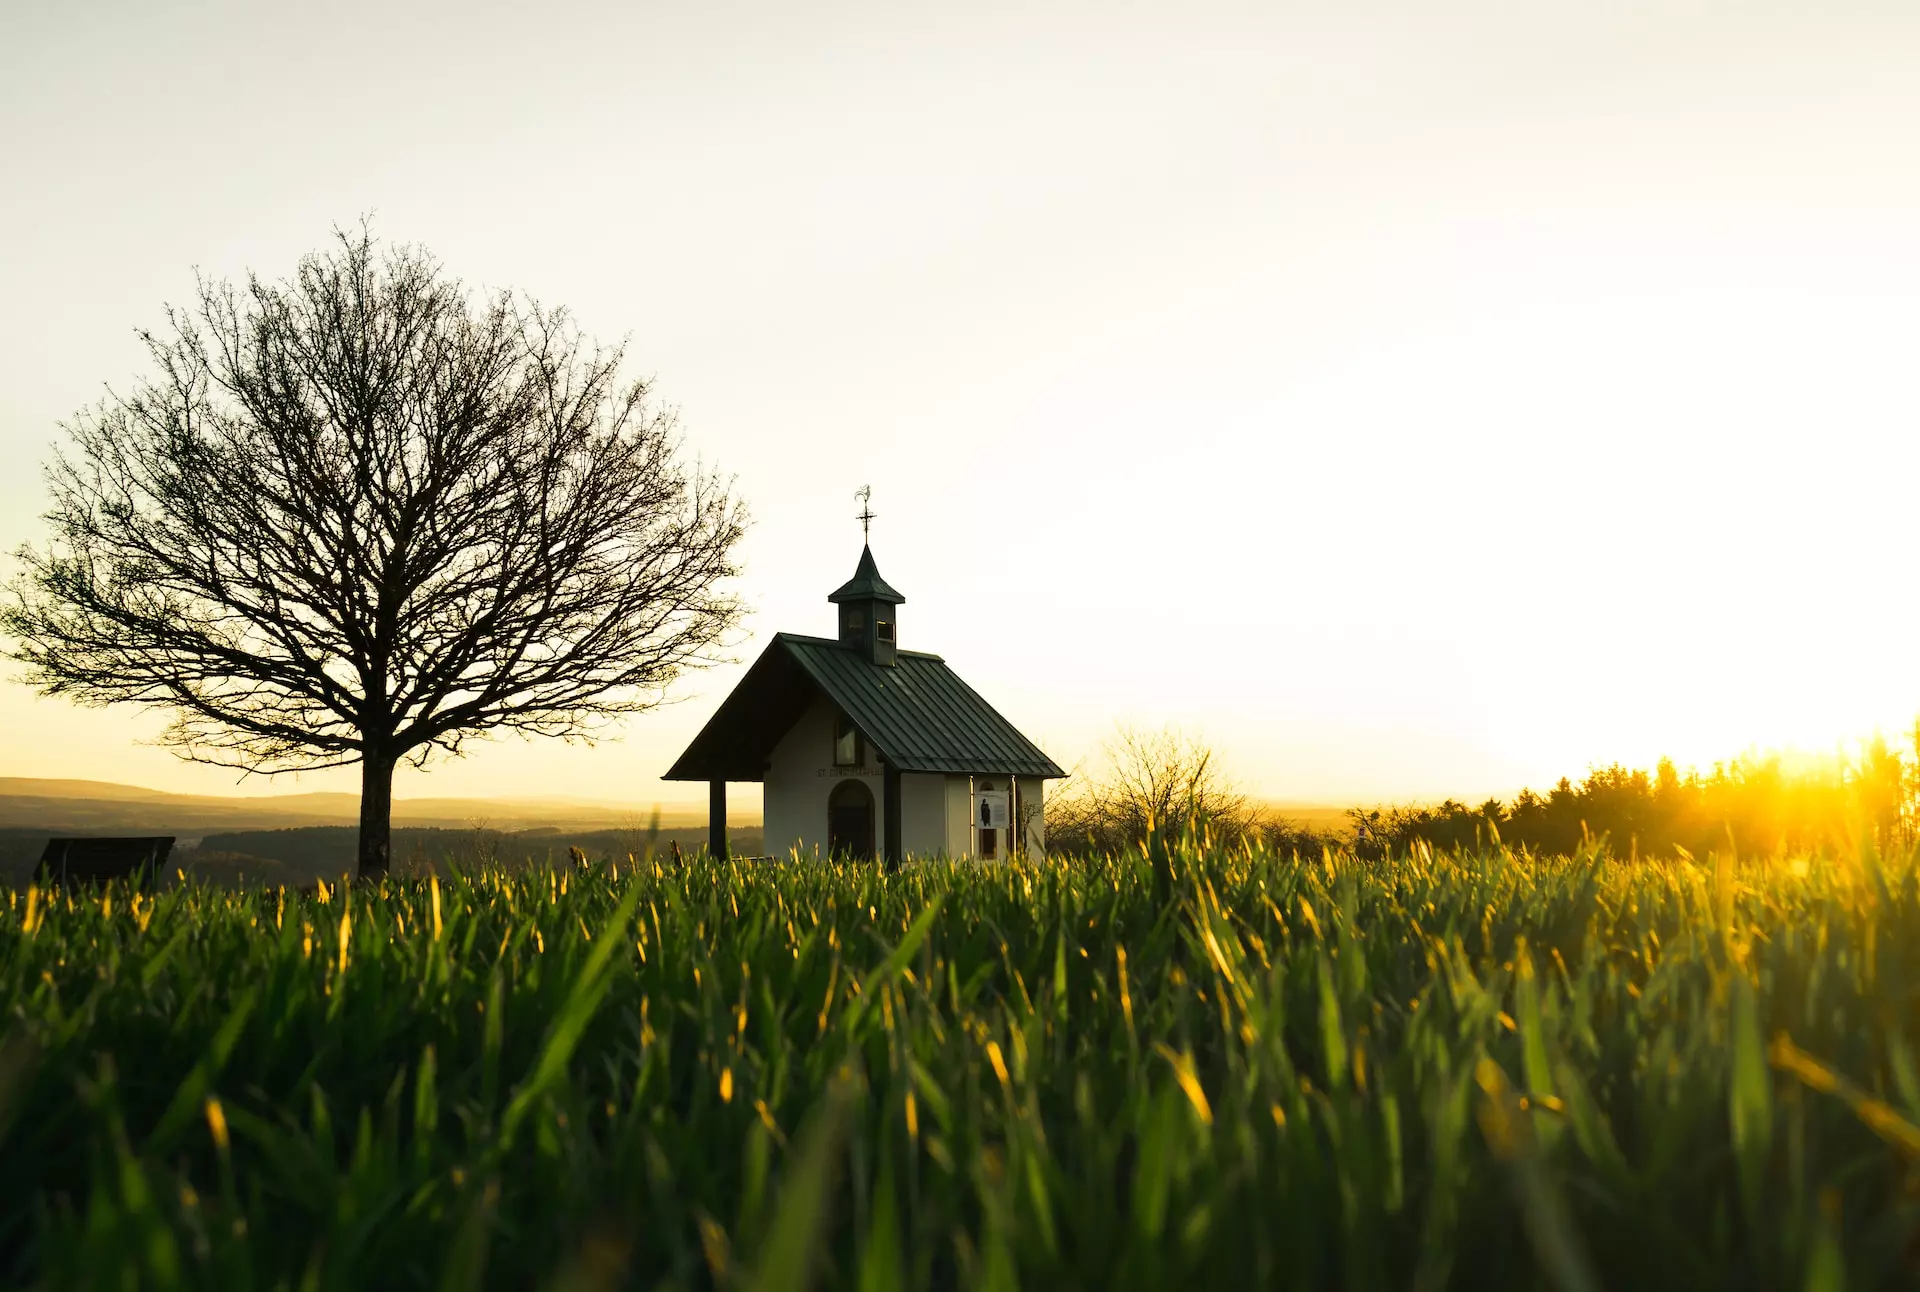 l'image d'une église dans un champ d’herbe verte pendant la journée - Photo de Subhasish Dutta sur https://unsplash.com/fr/photos/maison-en-bois-marron-sur-un-champ-dherbe-verte-pendant-la-journee-K8Brtpkzjxw